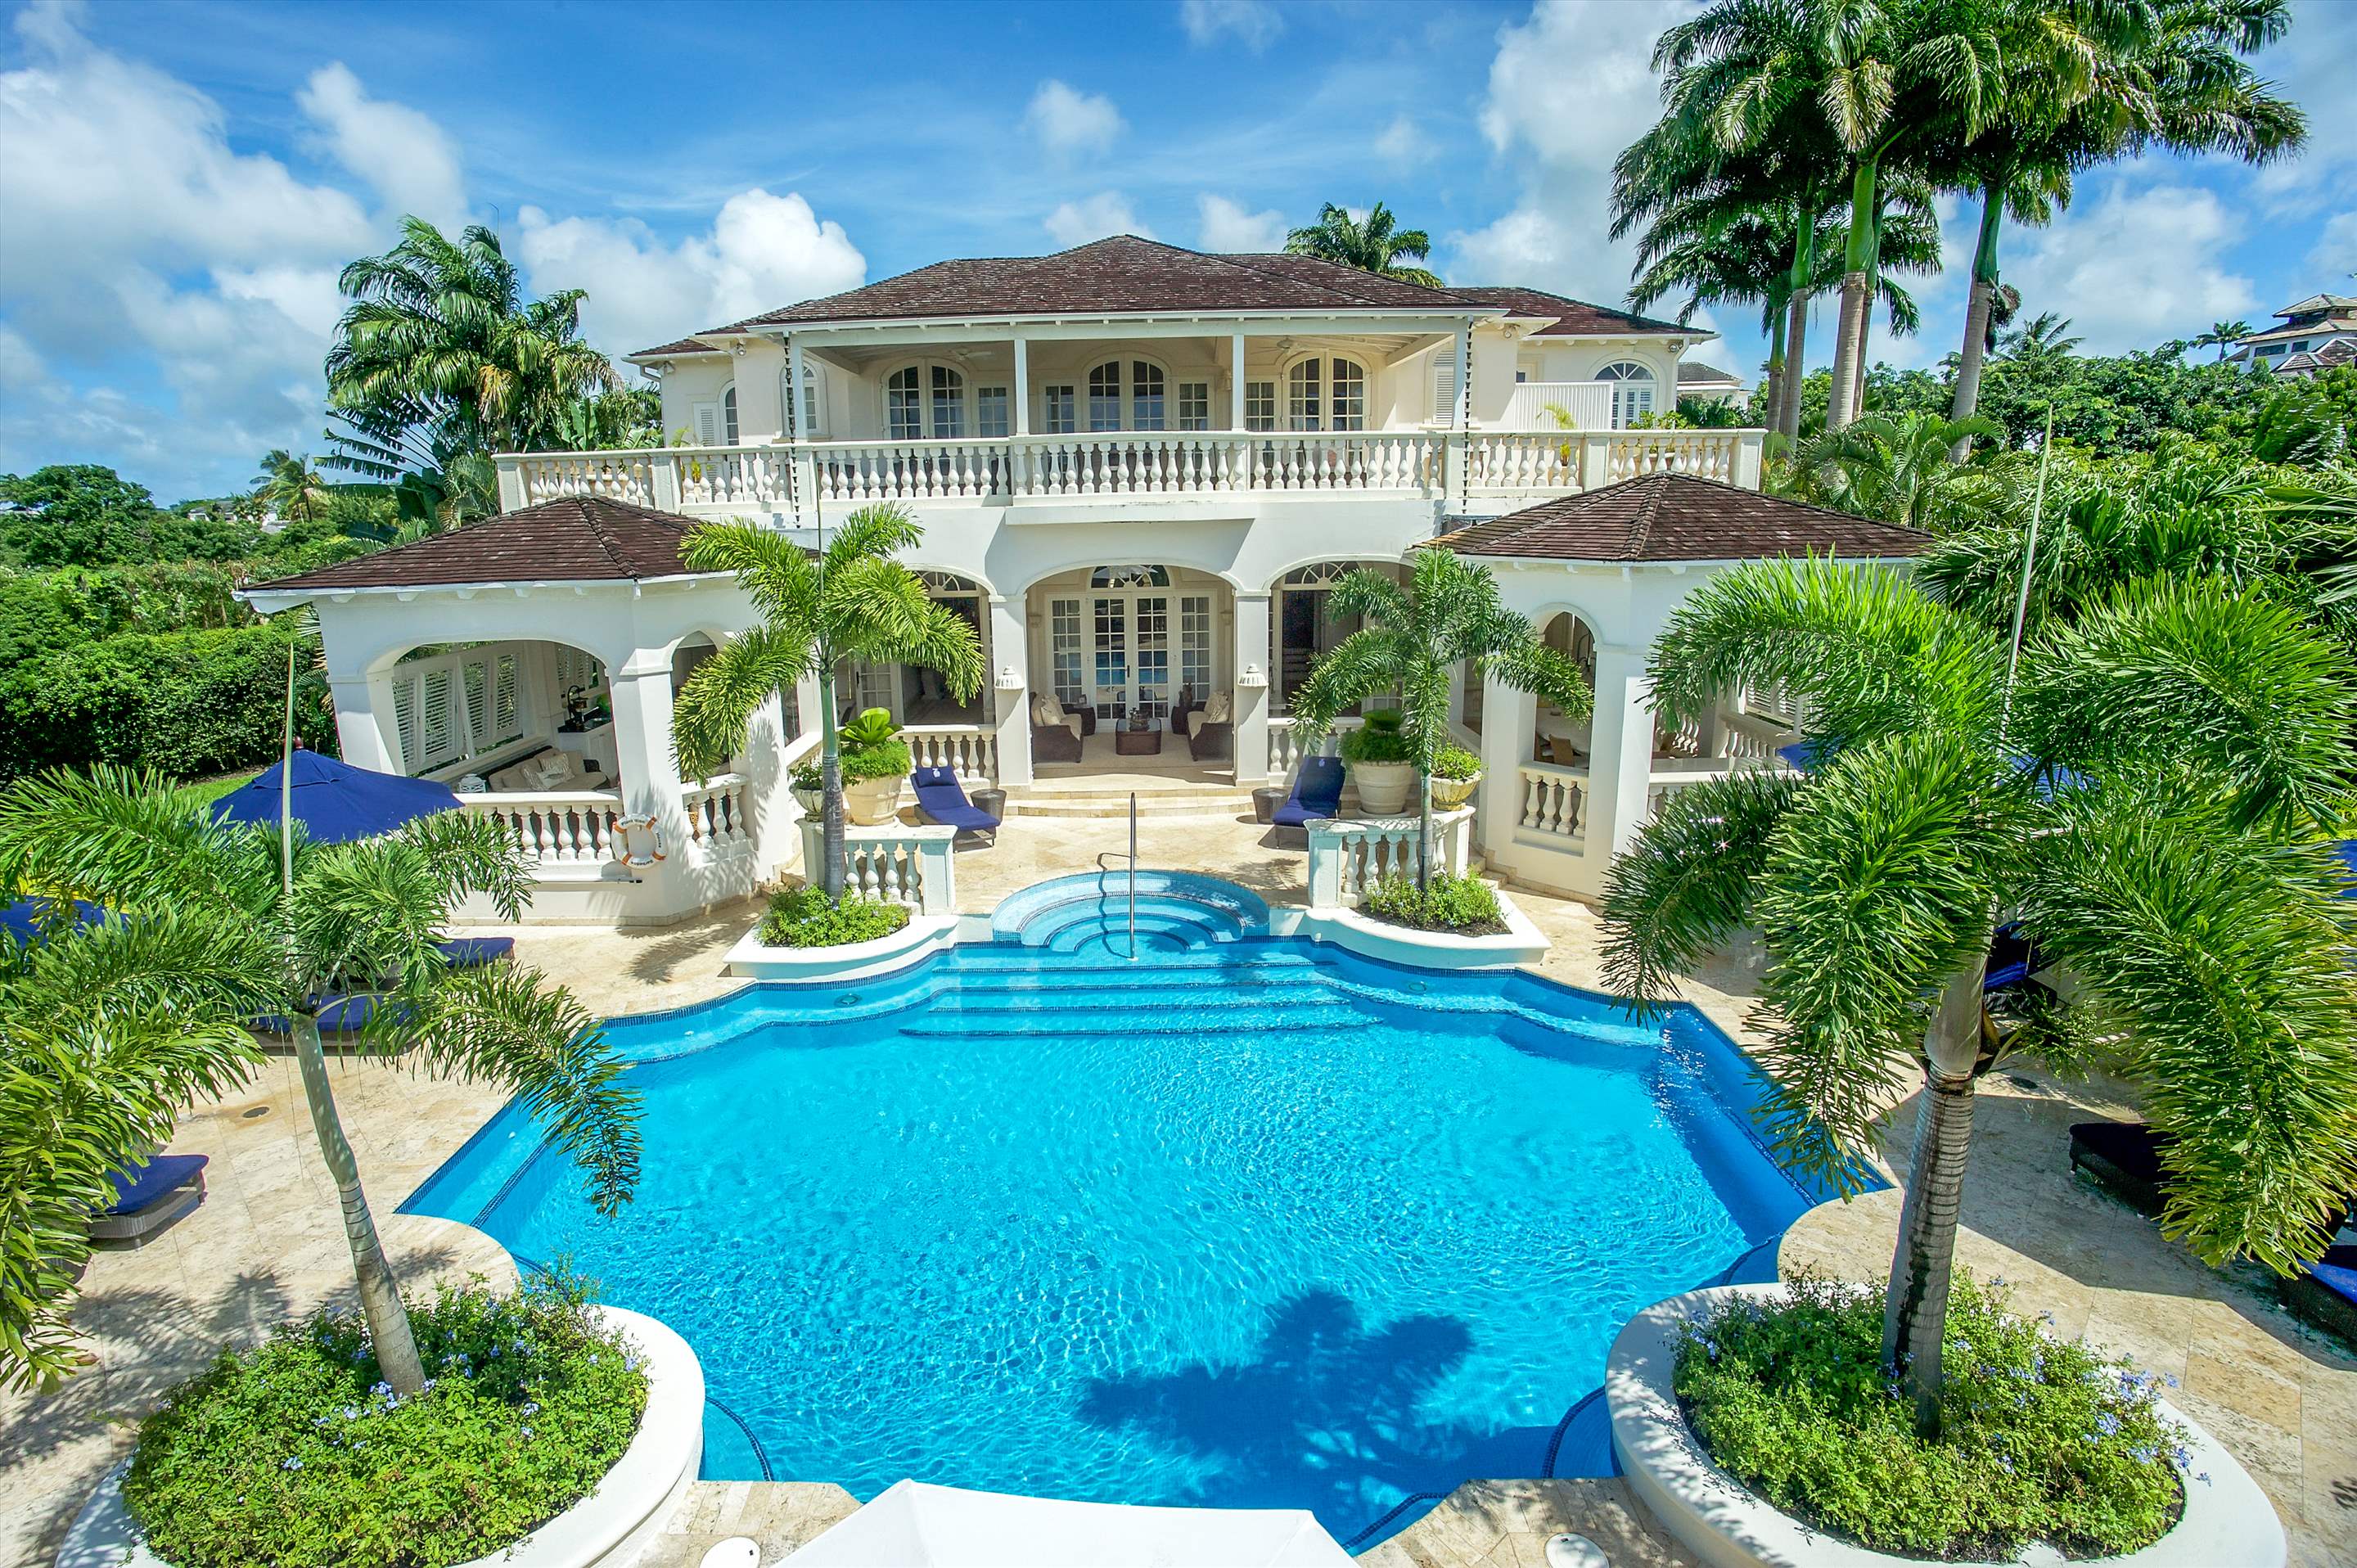 Plantation House, Royal Westmoreland, 6 bedroom, 6 bedroom villa in St. James & West Coast, Barbados Photo #1